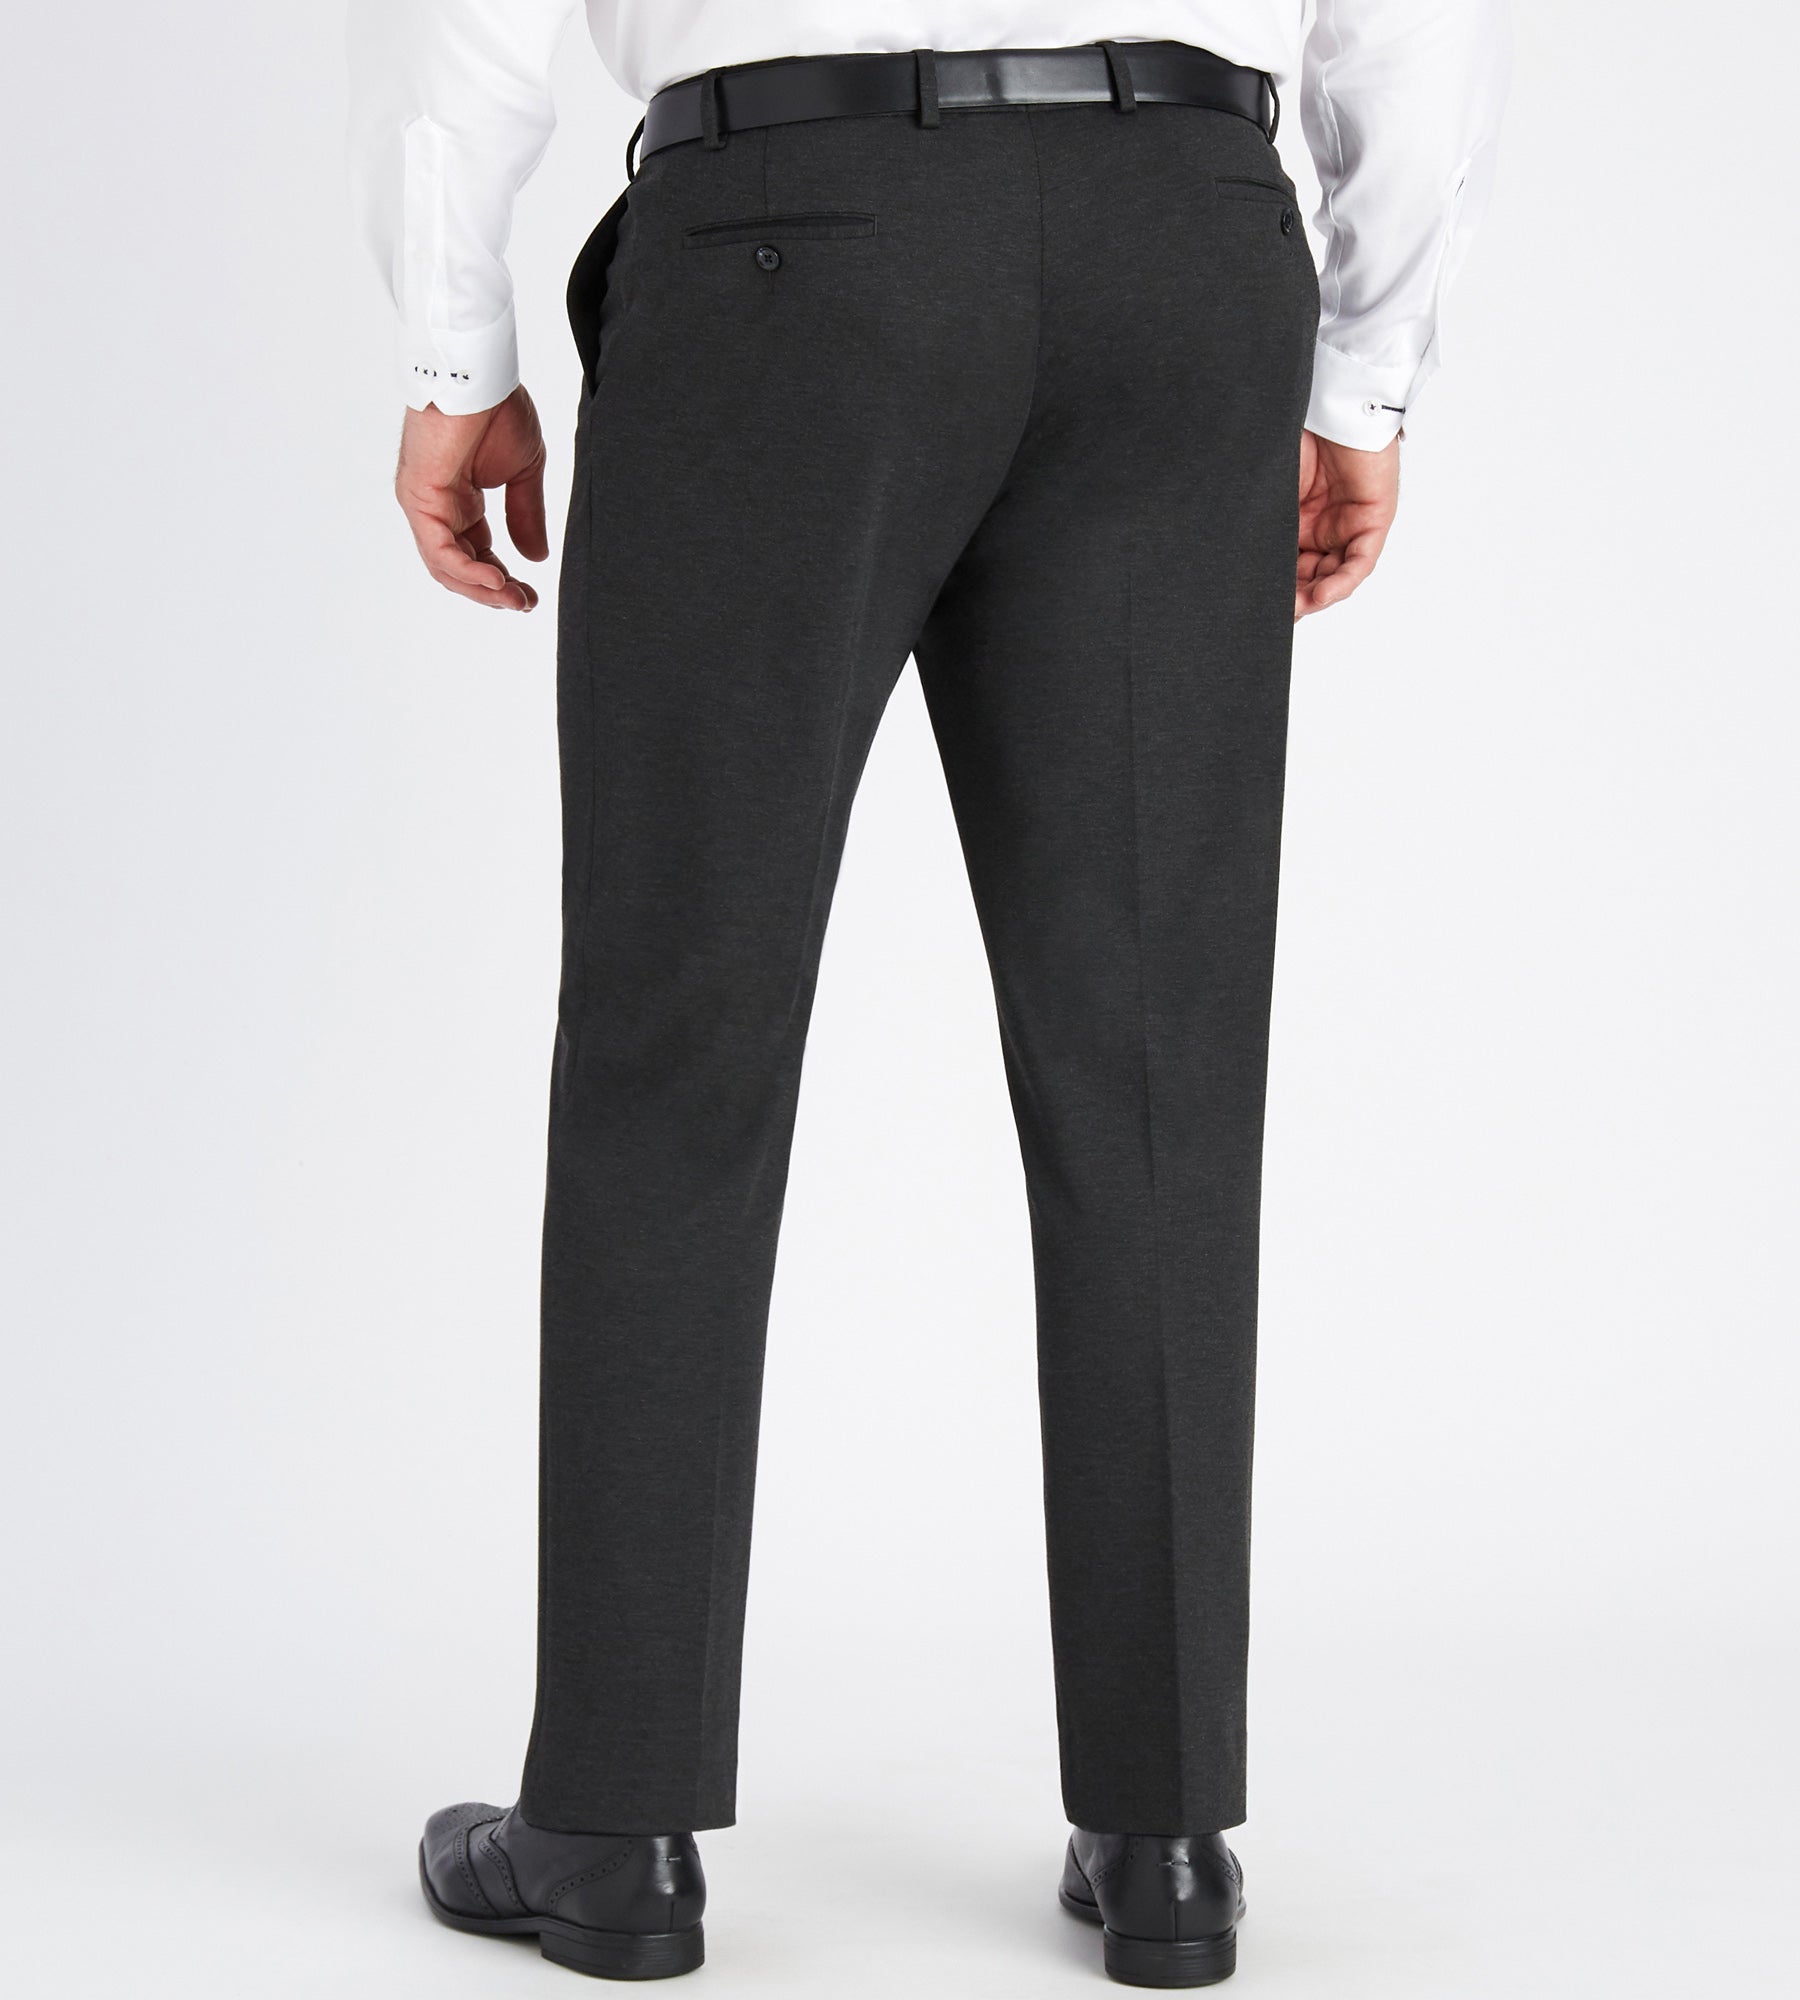 Two-tone knit stretch pant, Alberto, Shop Men's Dress Pants